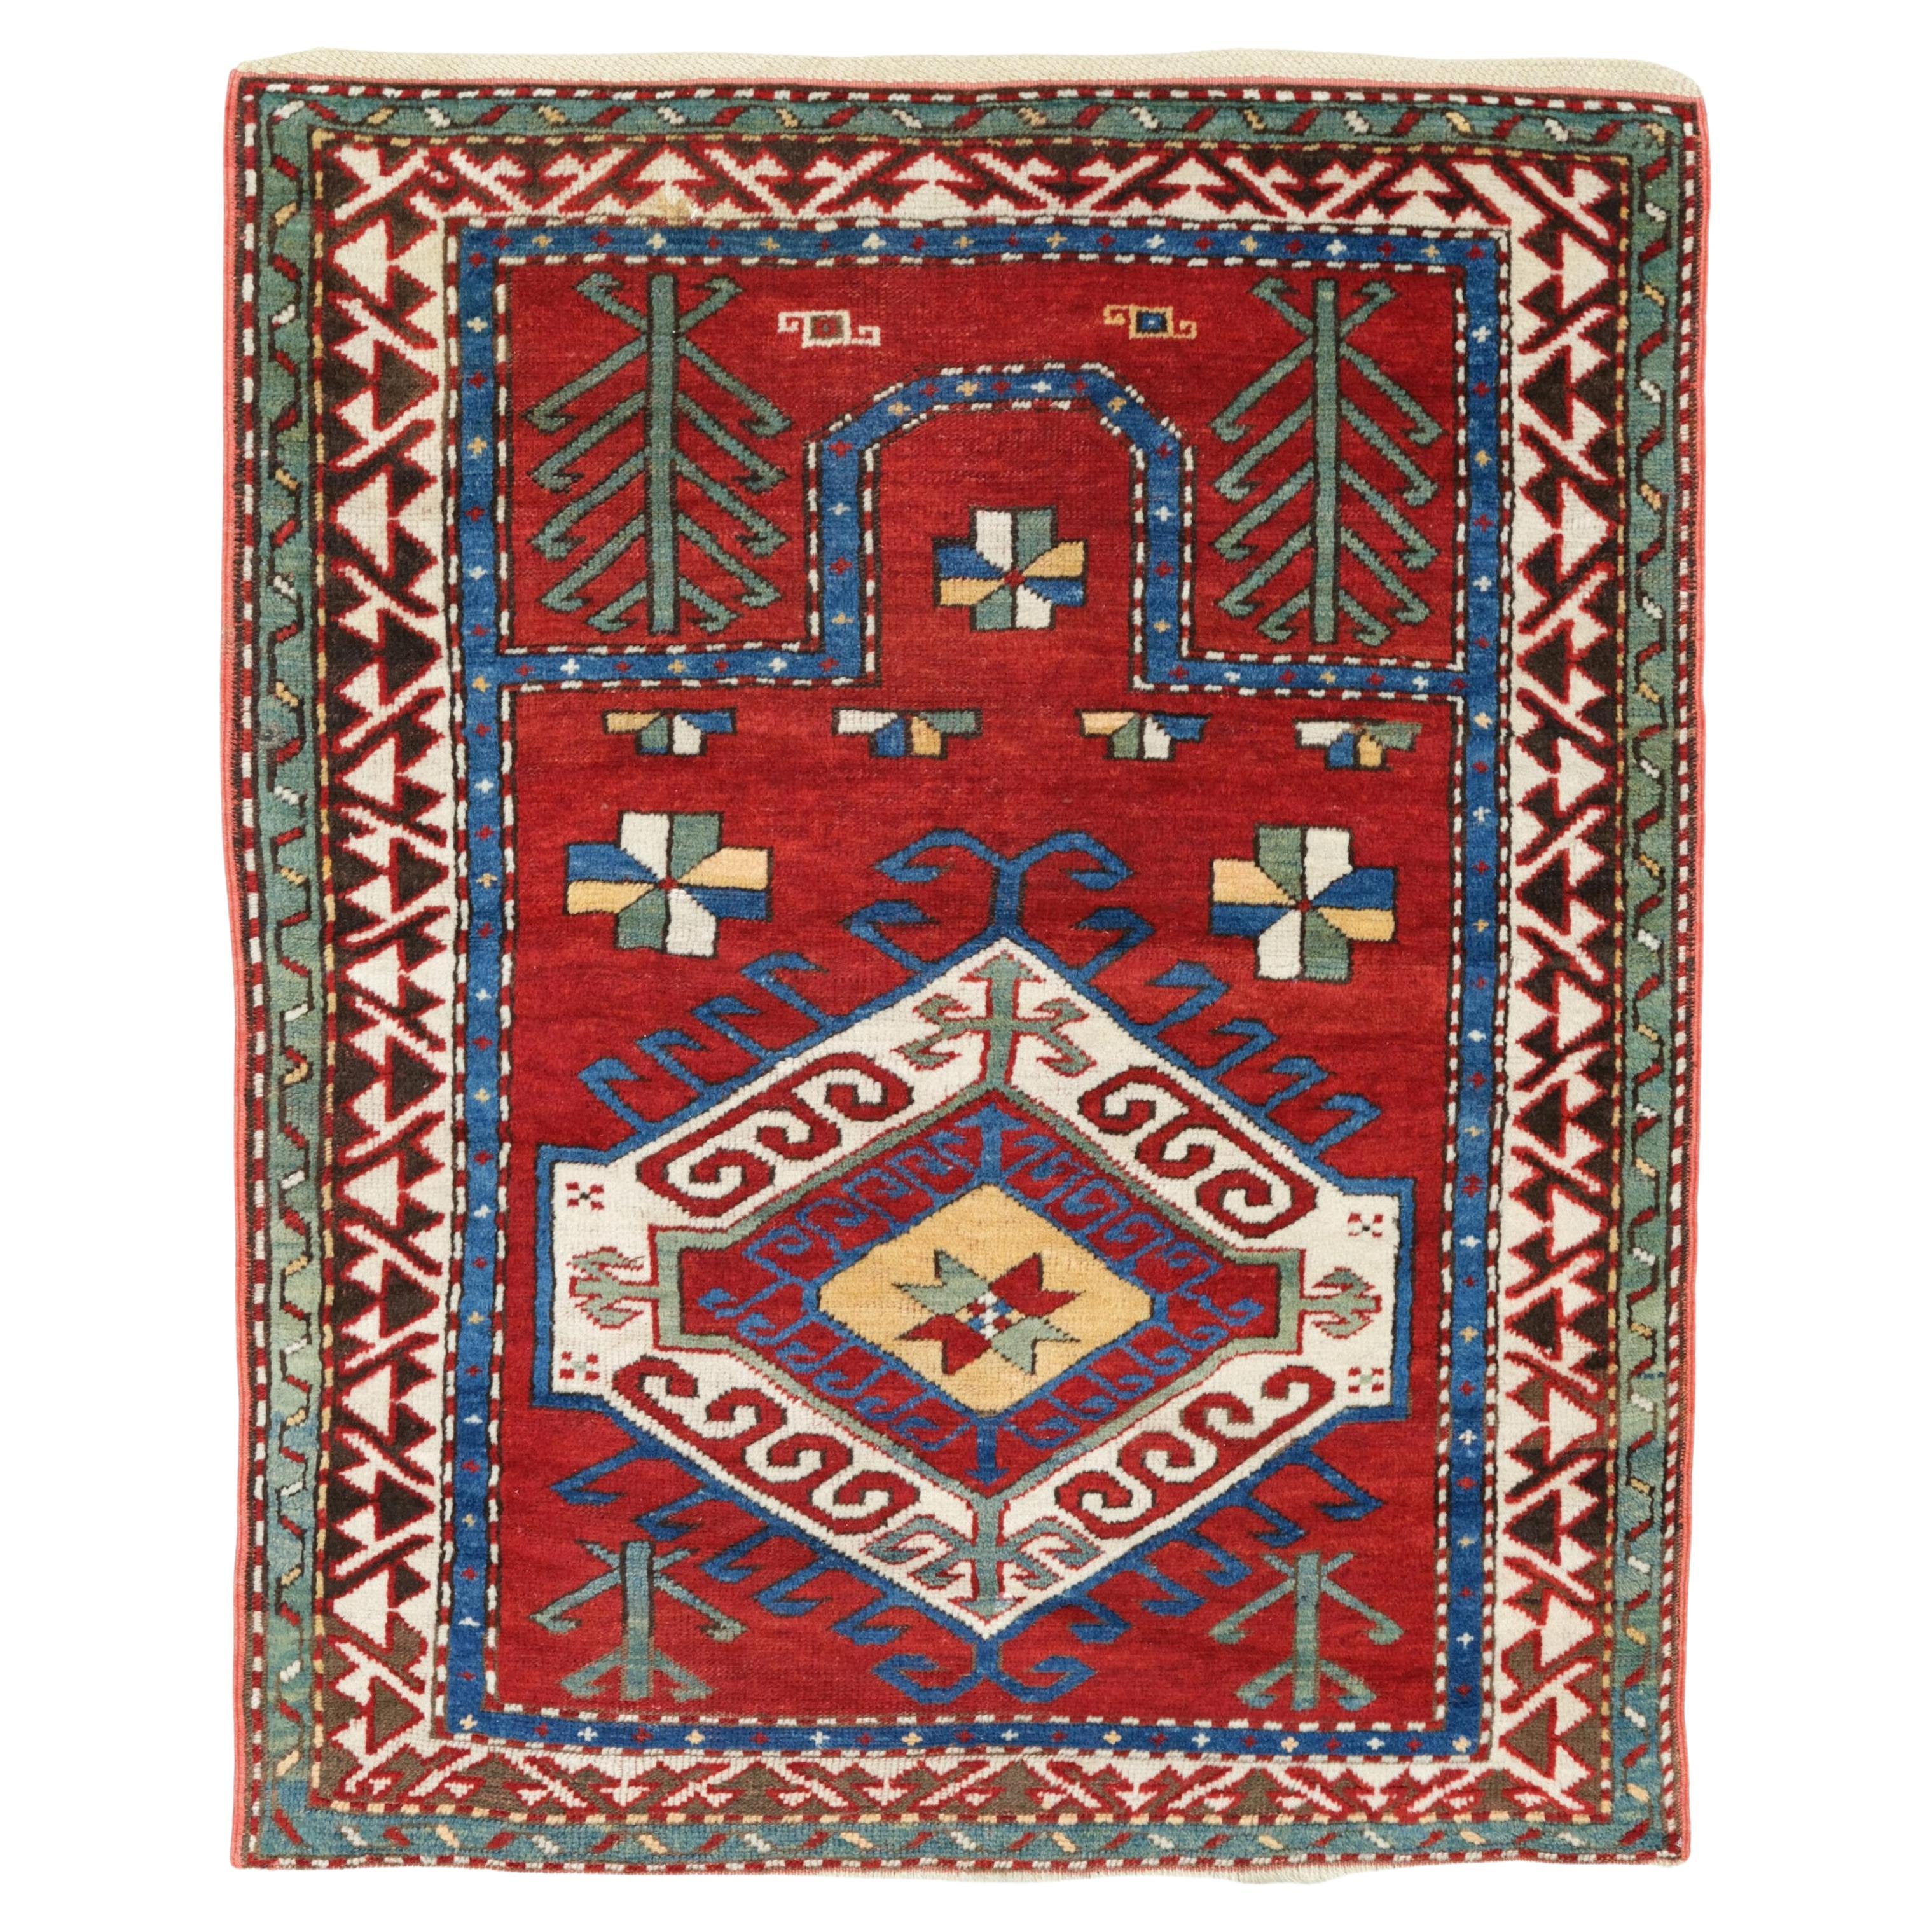 Antique Fahrola Prayer Rug - 19th Century Fahrola Prayer Rug, Caucasian Rug